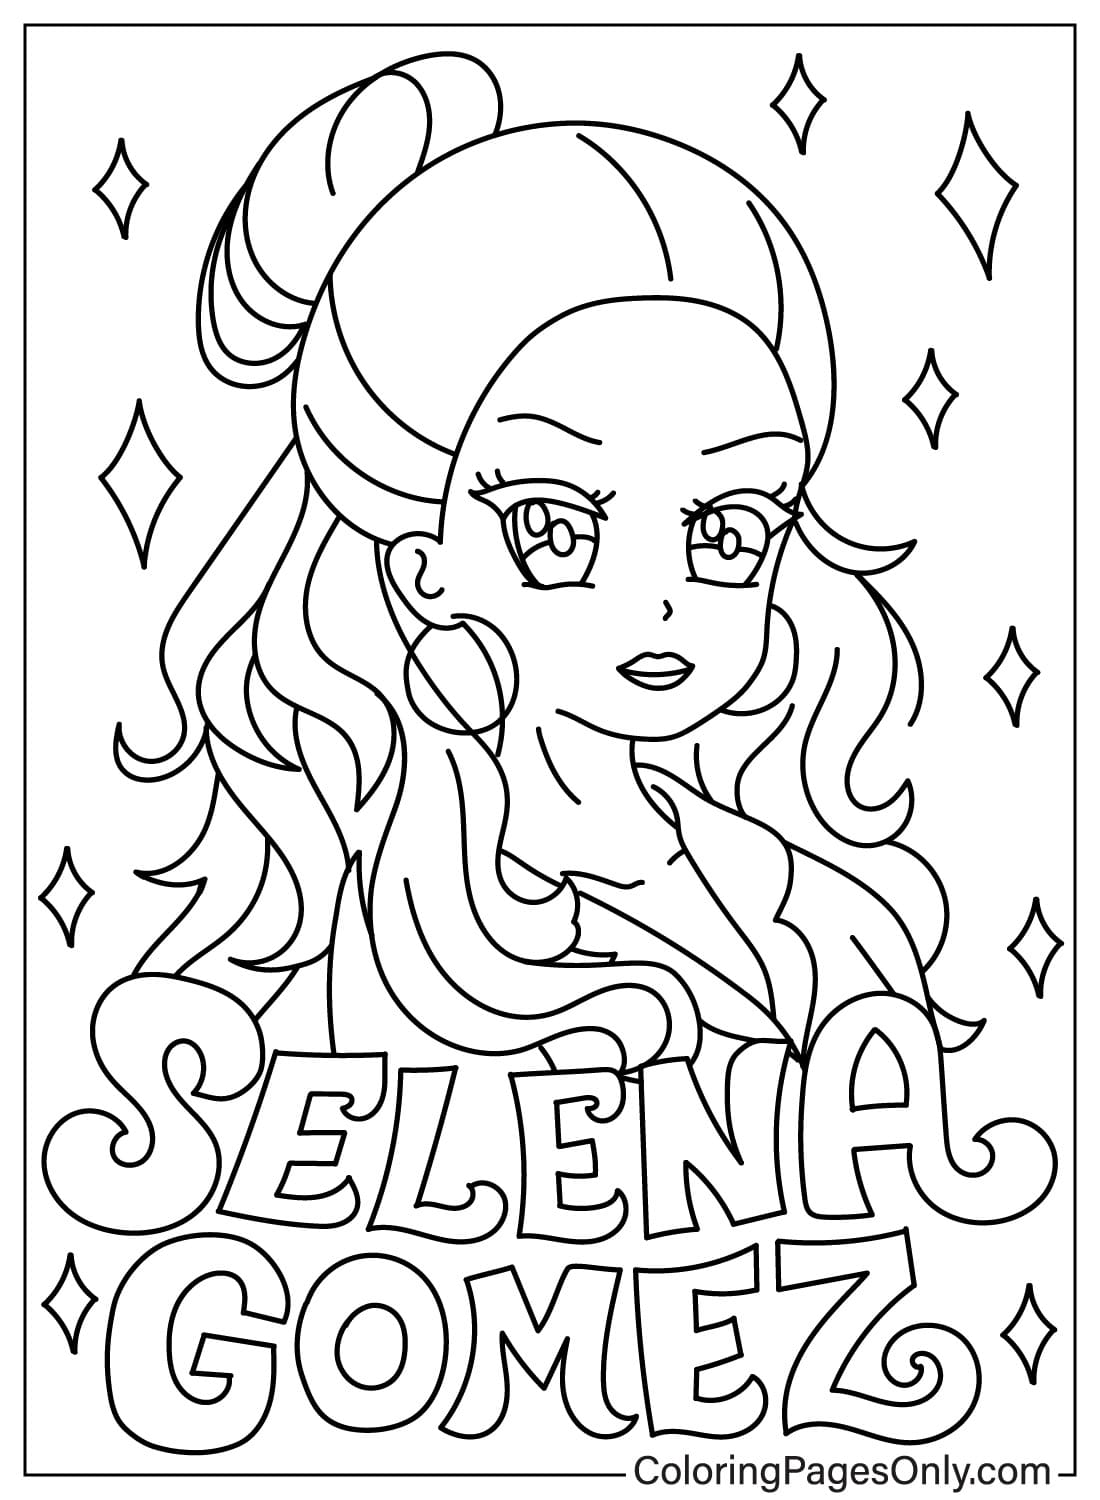 Página para colorear de Chibi Selena Gomez de Selena Gomez